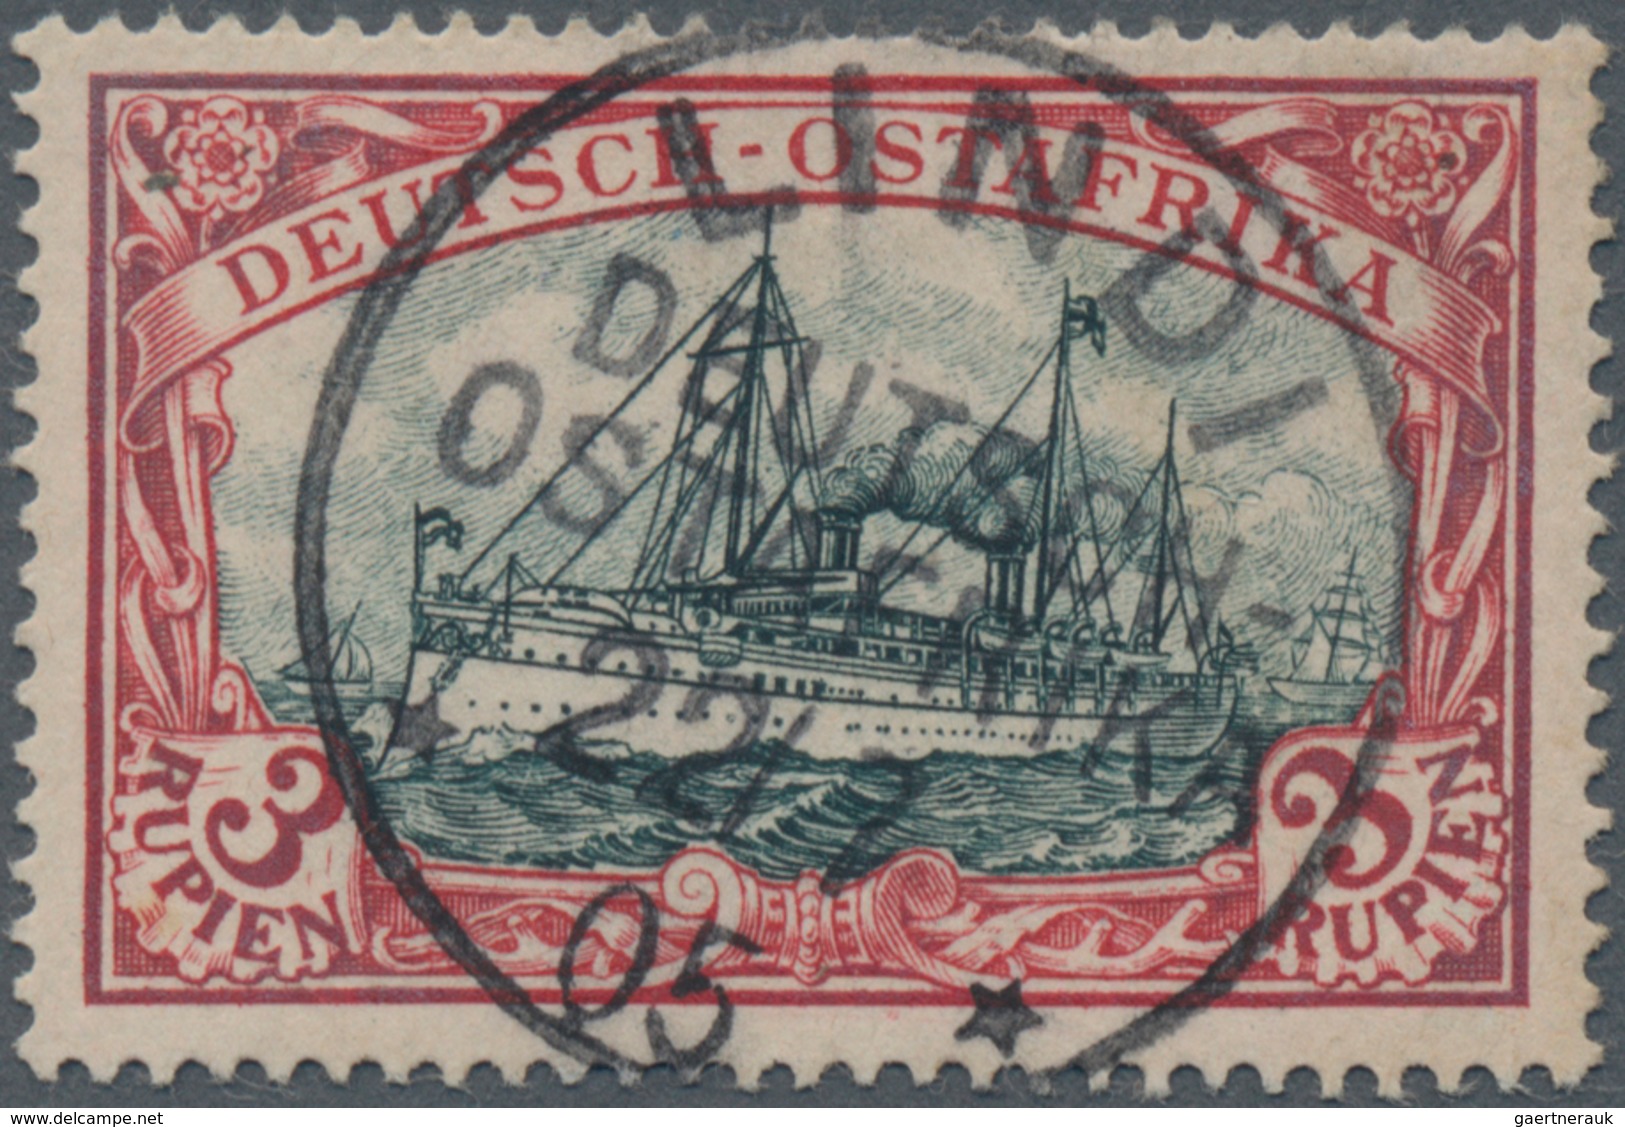 Deutsch-Ostafrika: 1901, 3 R. Kaiseryacht Dunkelrot/grün, Sauberes Luxusstück, Genau Mittig Gestempe - Duits-Oost-Afrika